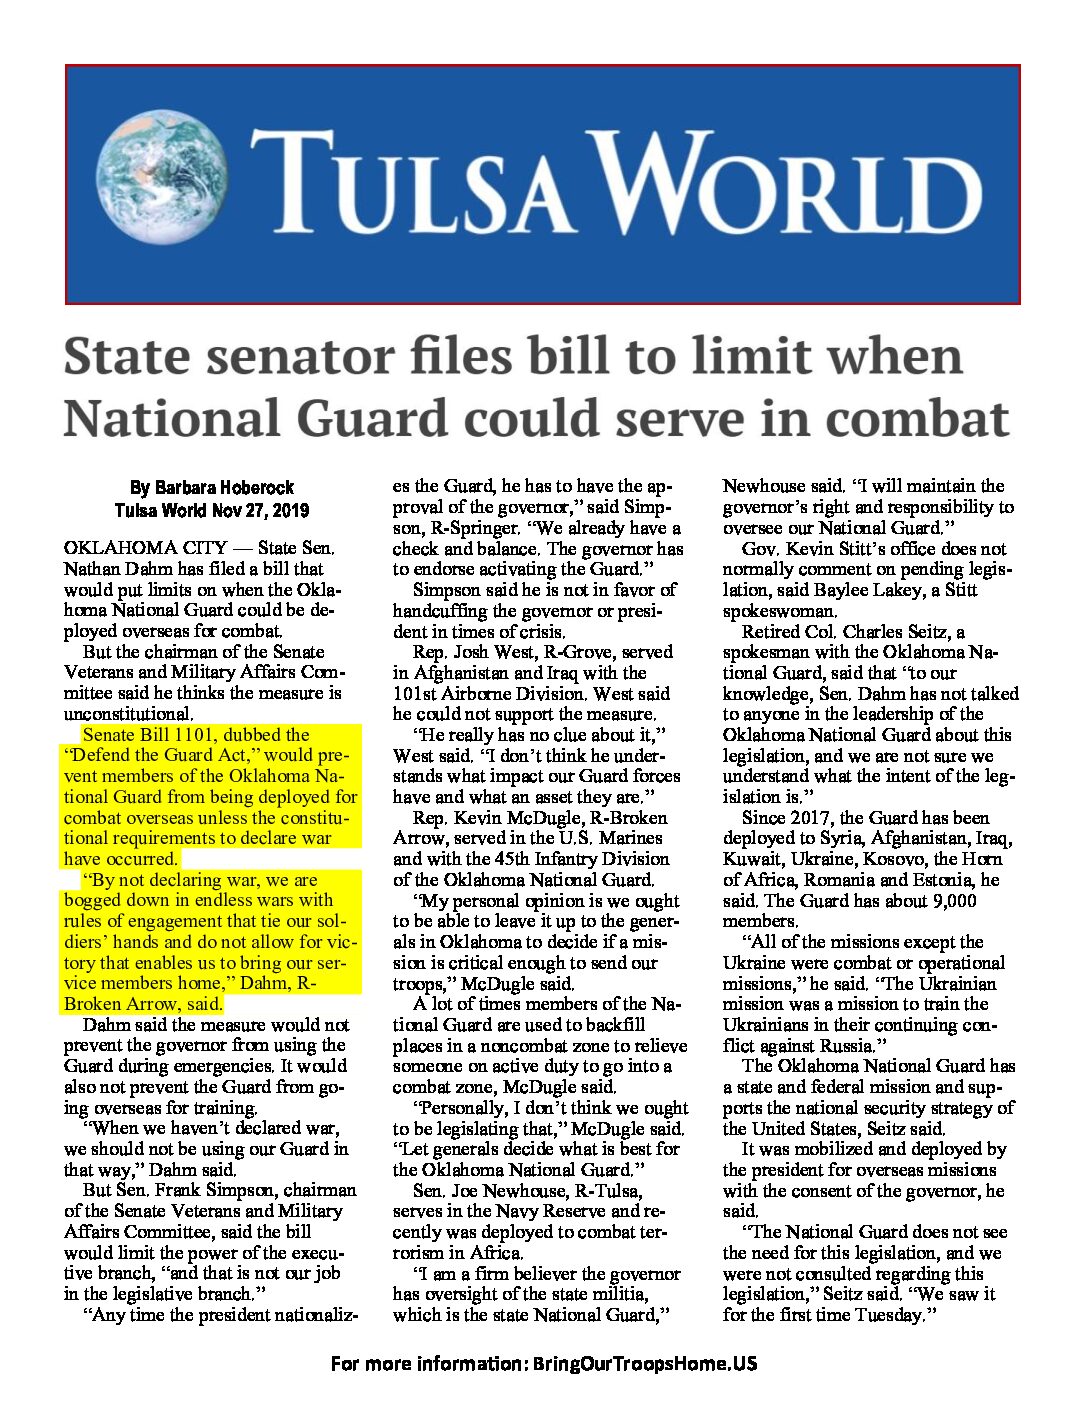 Tulsa World – State senator files bill to limit National Guard combat